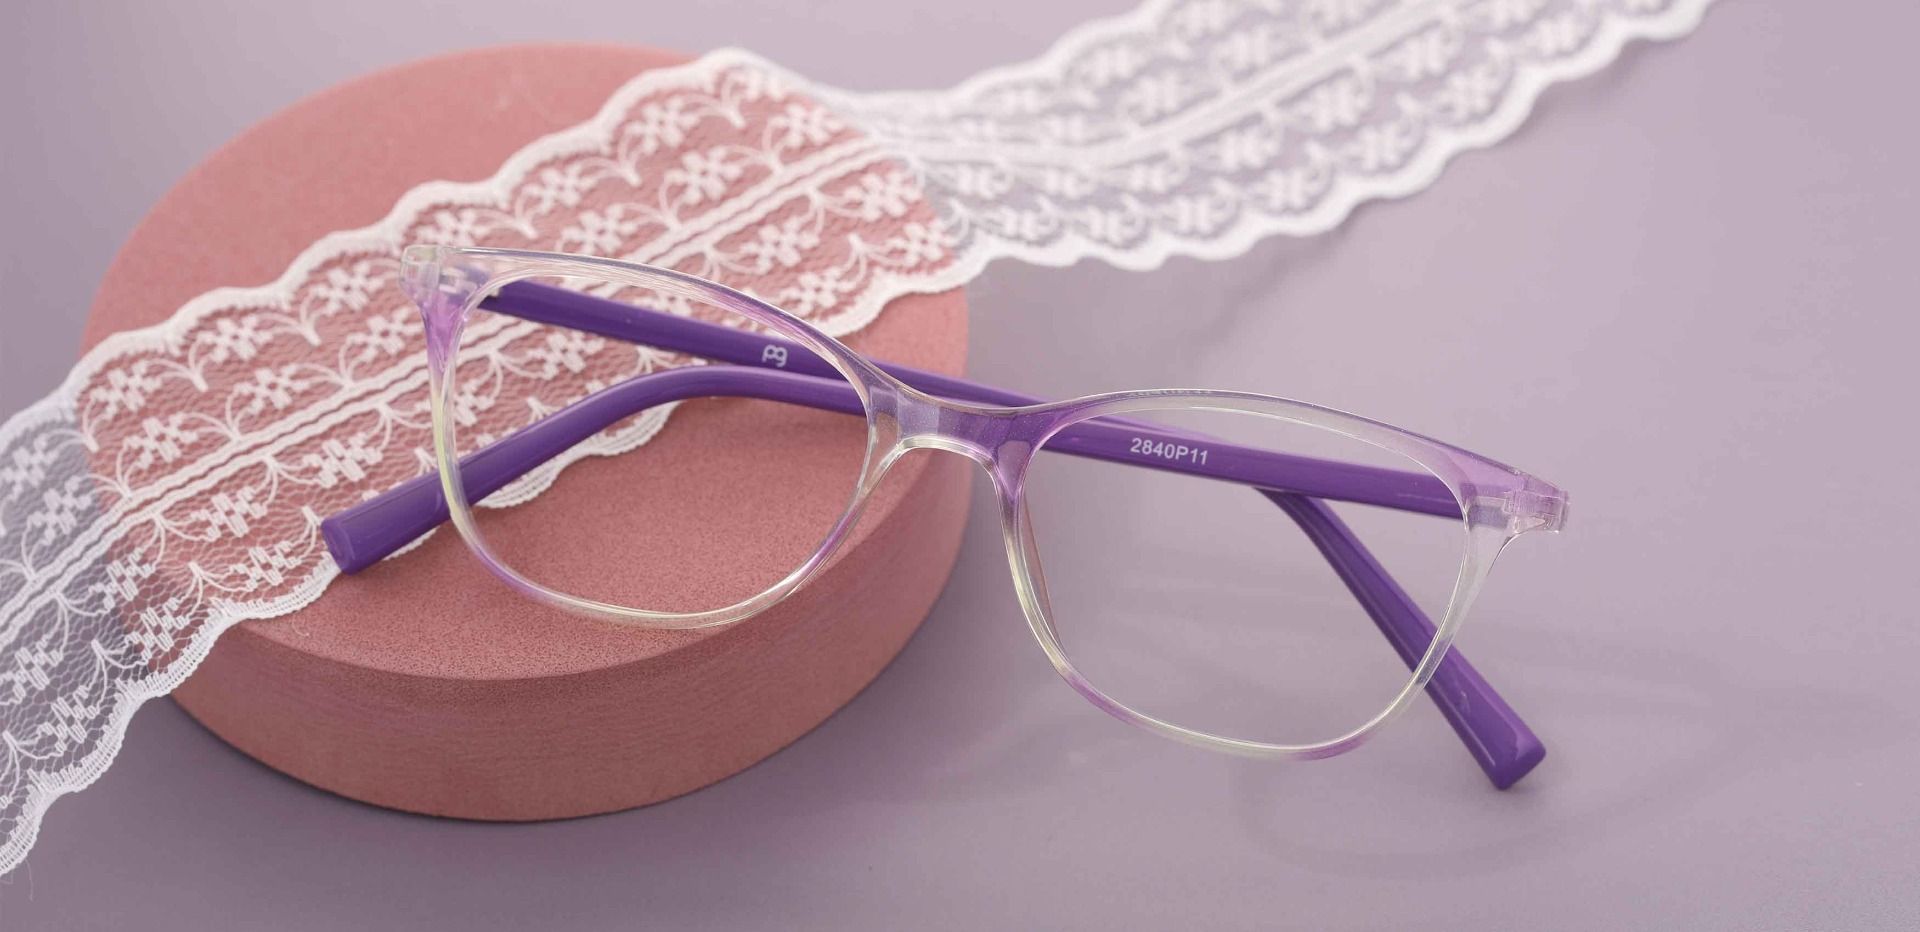 Bravo Rectangle Non-Rx Glasses - Purple